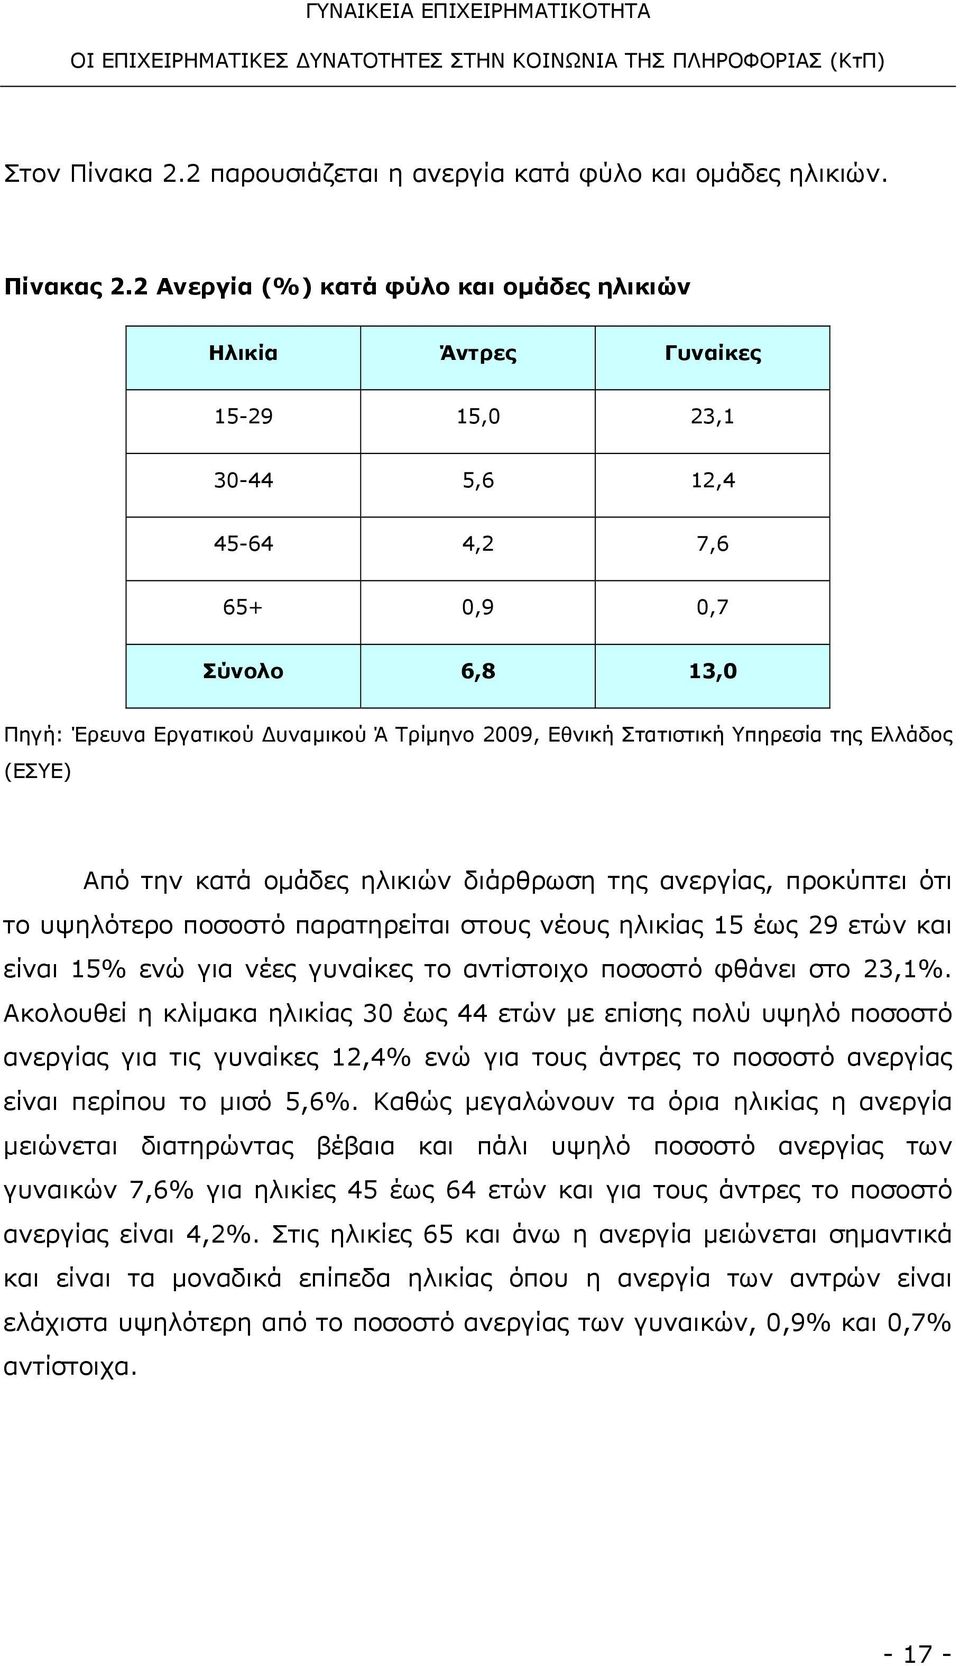 Στατιστική Υπηρεσία της Ελλάδος (ΕΣΥΕ) Από την κατά οµάδες ηλικιών διάρθρωση της ανεργίας, προκύπτει ότι το υψηλότερο ποσοστό παρατηρείται στους νέους ηλικίας 15 έως 29 ετών και είναι 15% ενώ για